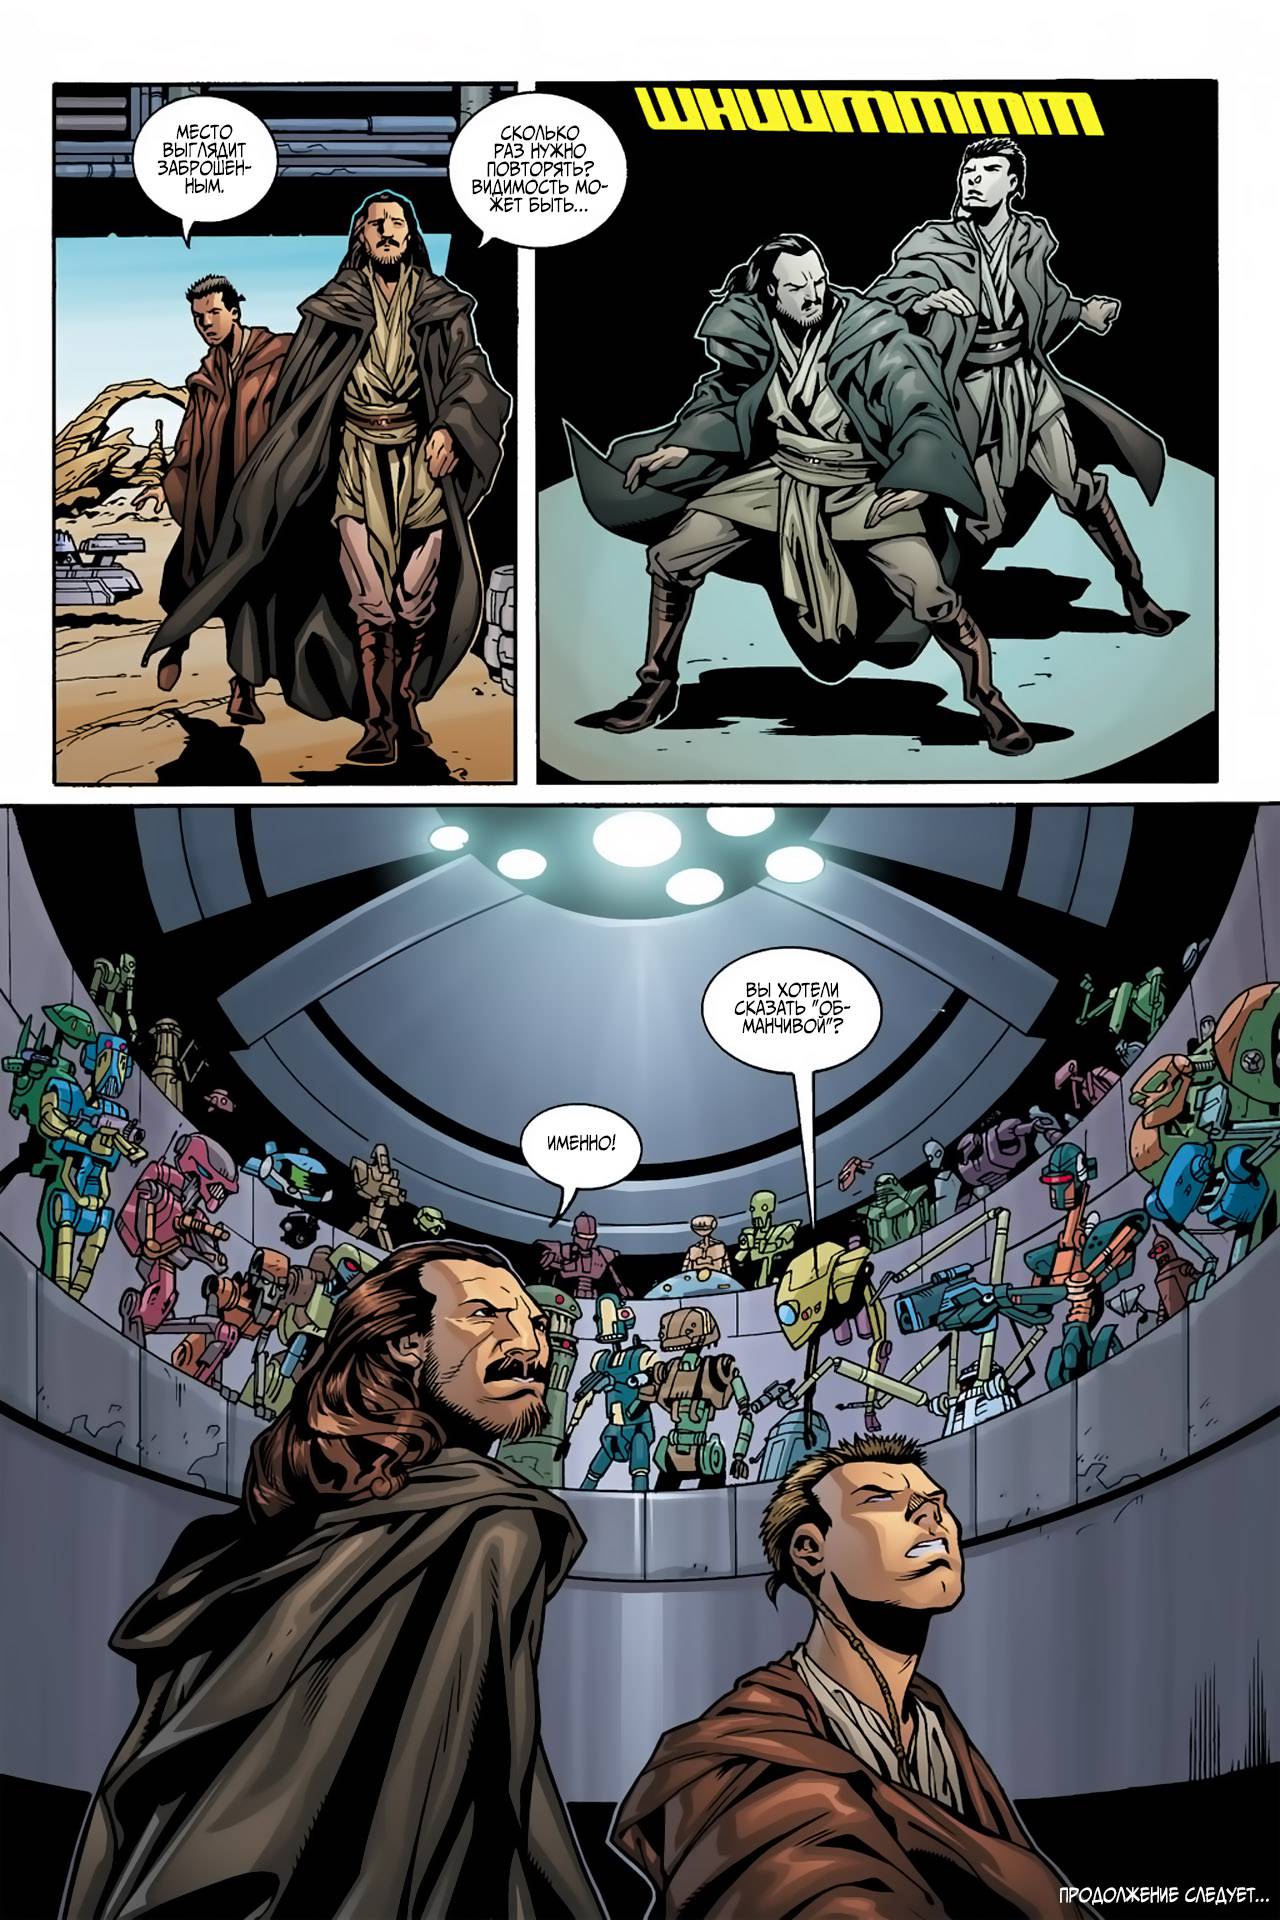 Звездные Войны: Квай-Гон и Оби-Ван: Последний Бой на Орт-Мантелле №1 онлайн